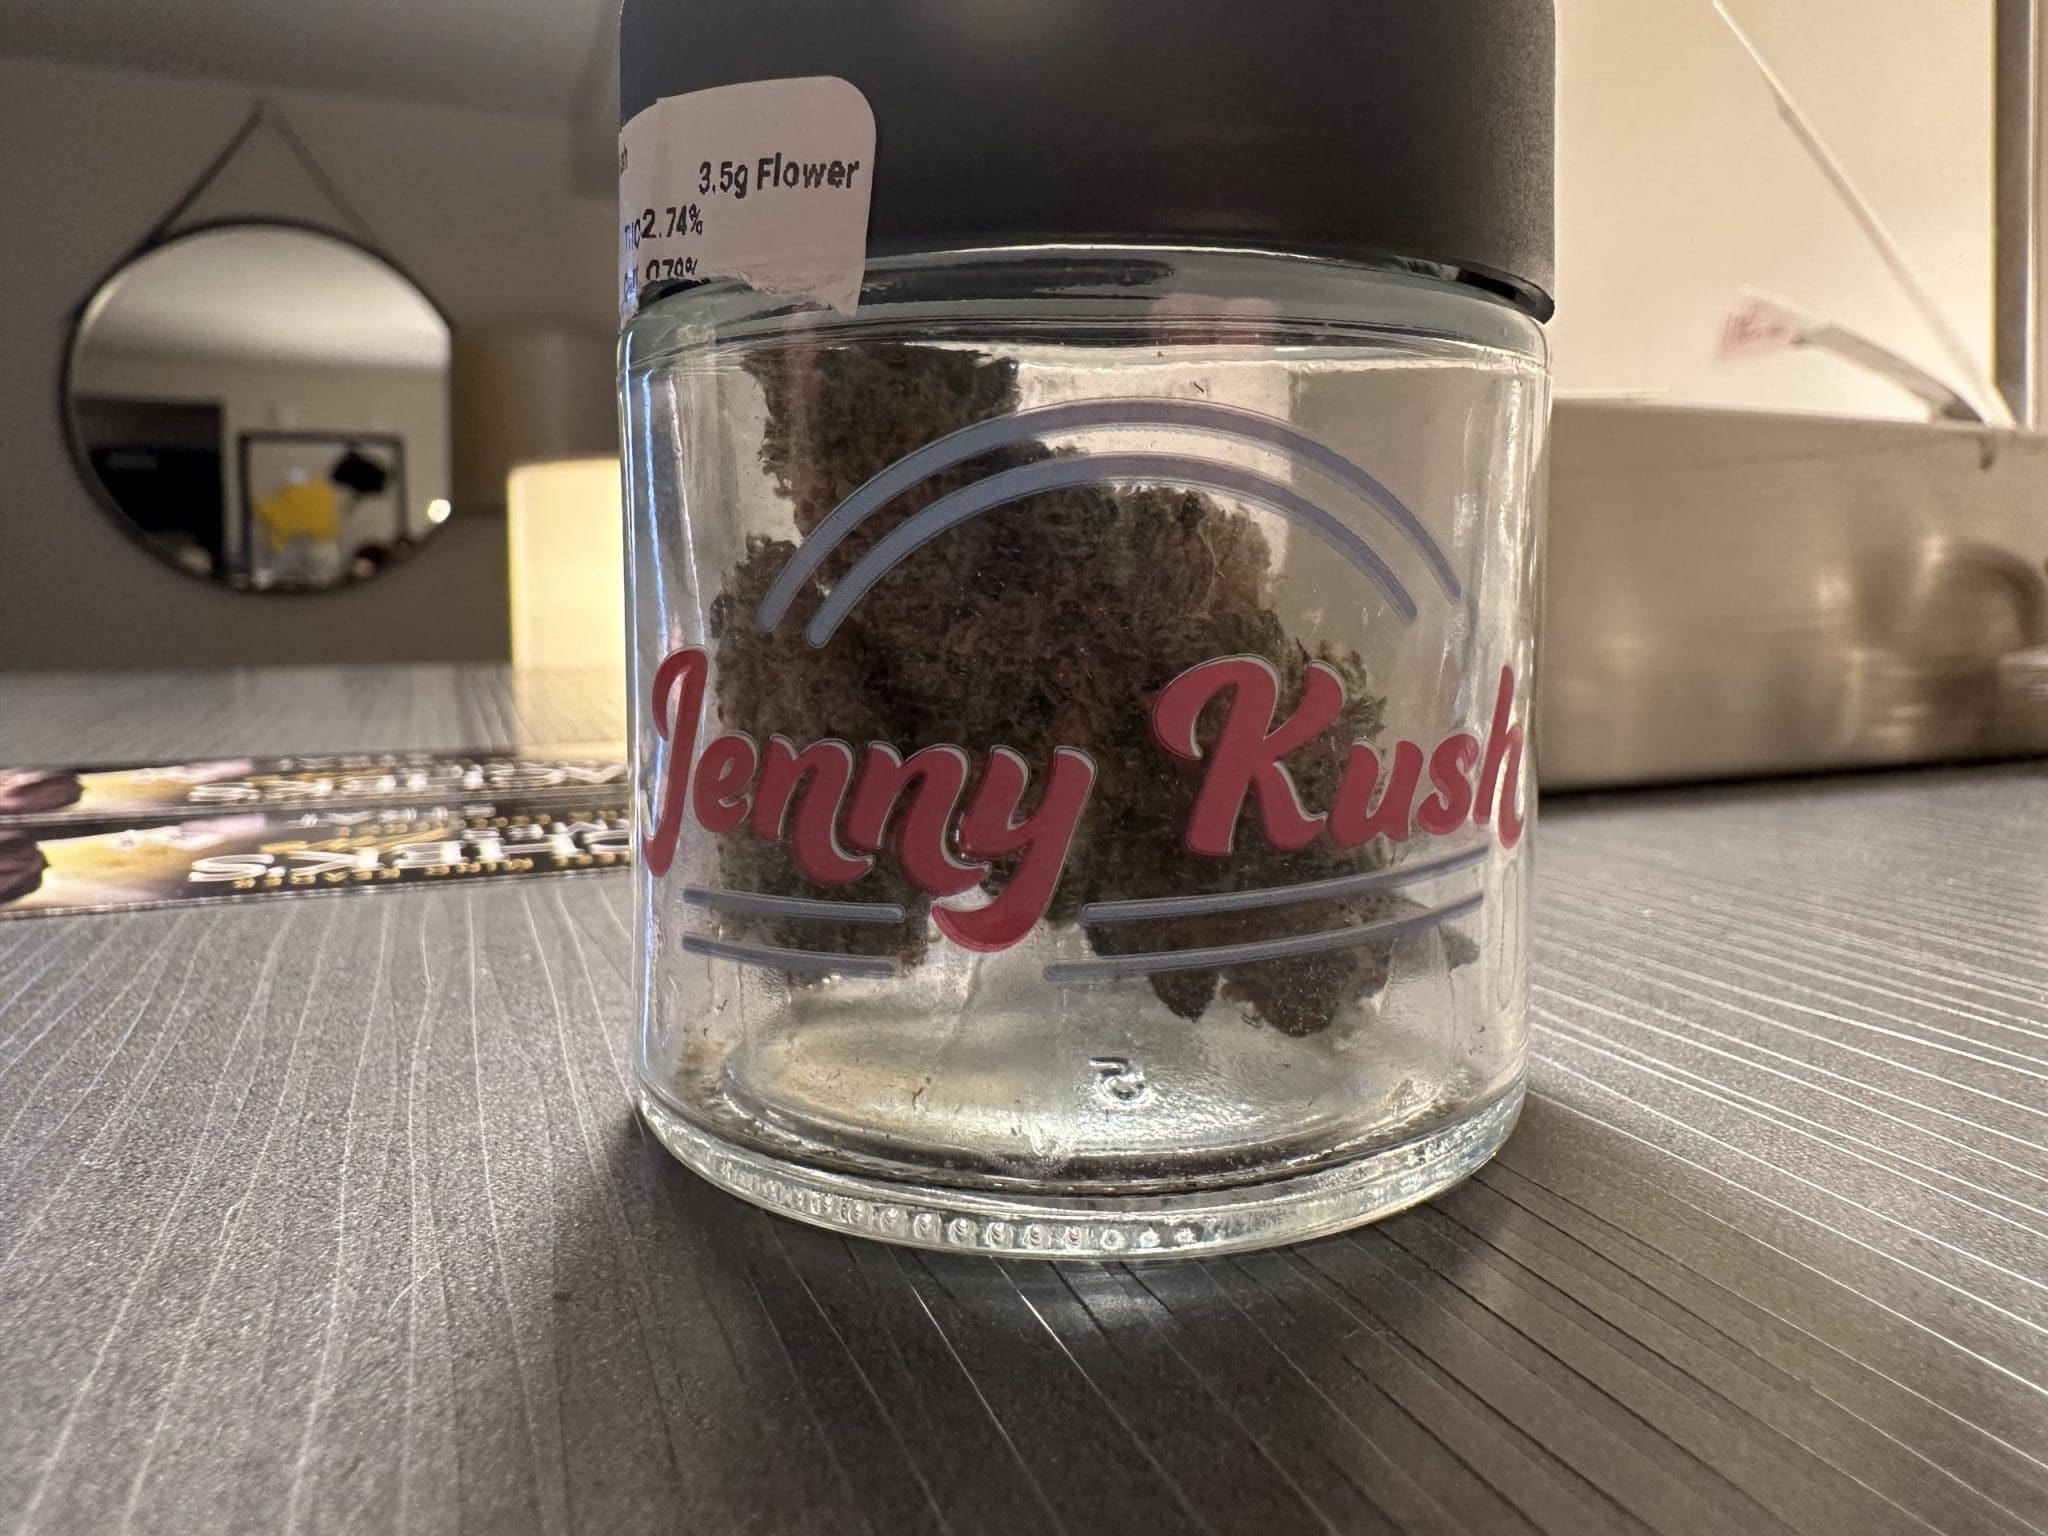 Jenny Kush Review: Worth the Hype? (Balanced Hybrid, Sweet Taste)